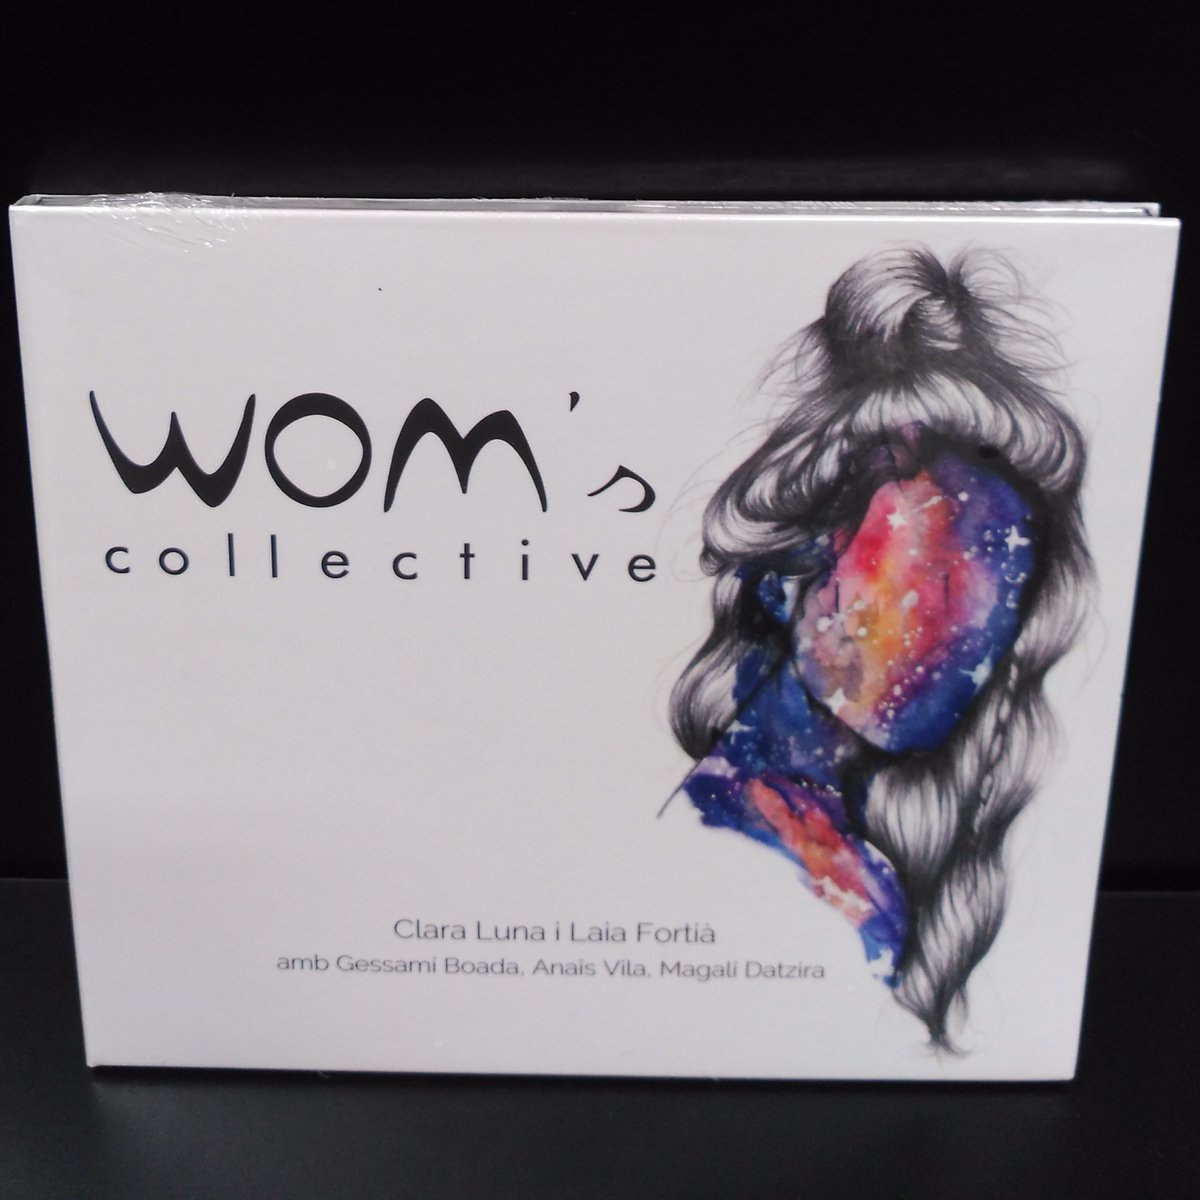 Ja tenim aquí el primer disc de les @WOMscollective. Un àlbum on també col·laboren Sara Pi, Judit Neddermann i Núria Graham, entre d'altres. Disponible en CD.